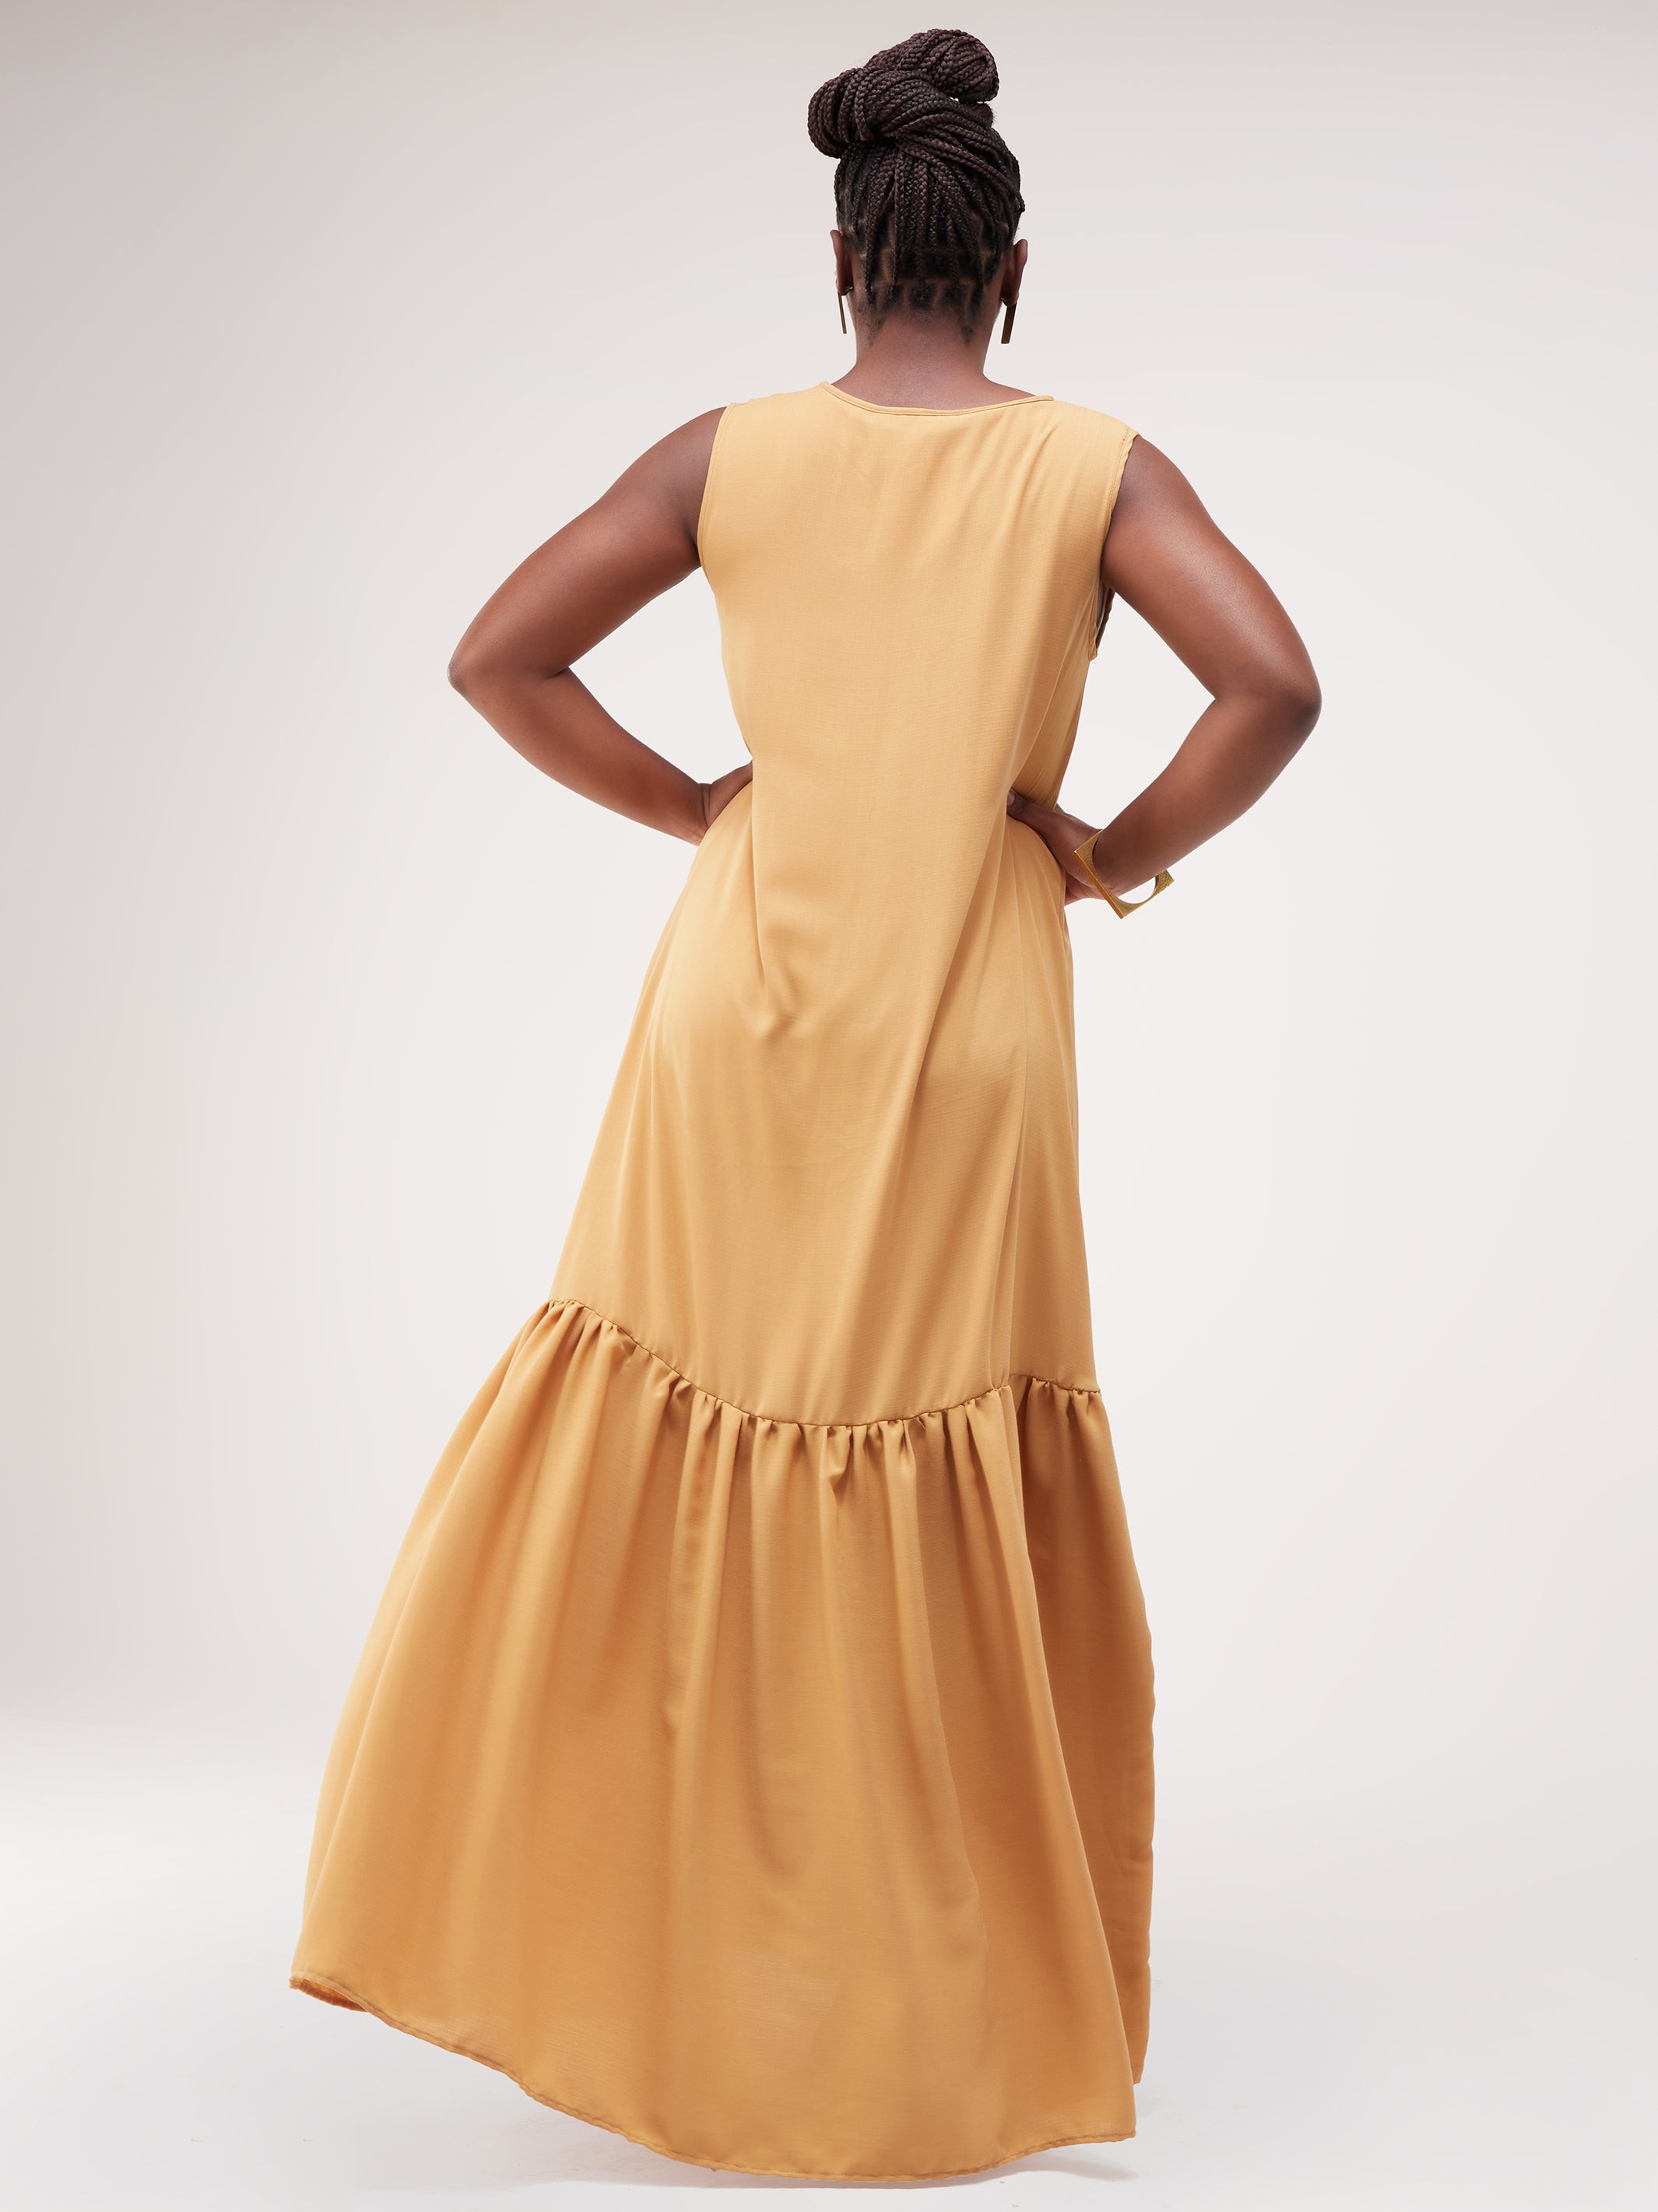 Safari Ayana Sleeveless Maxi Dress - Taupe